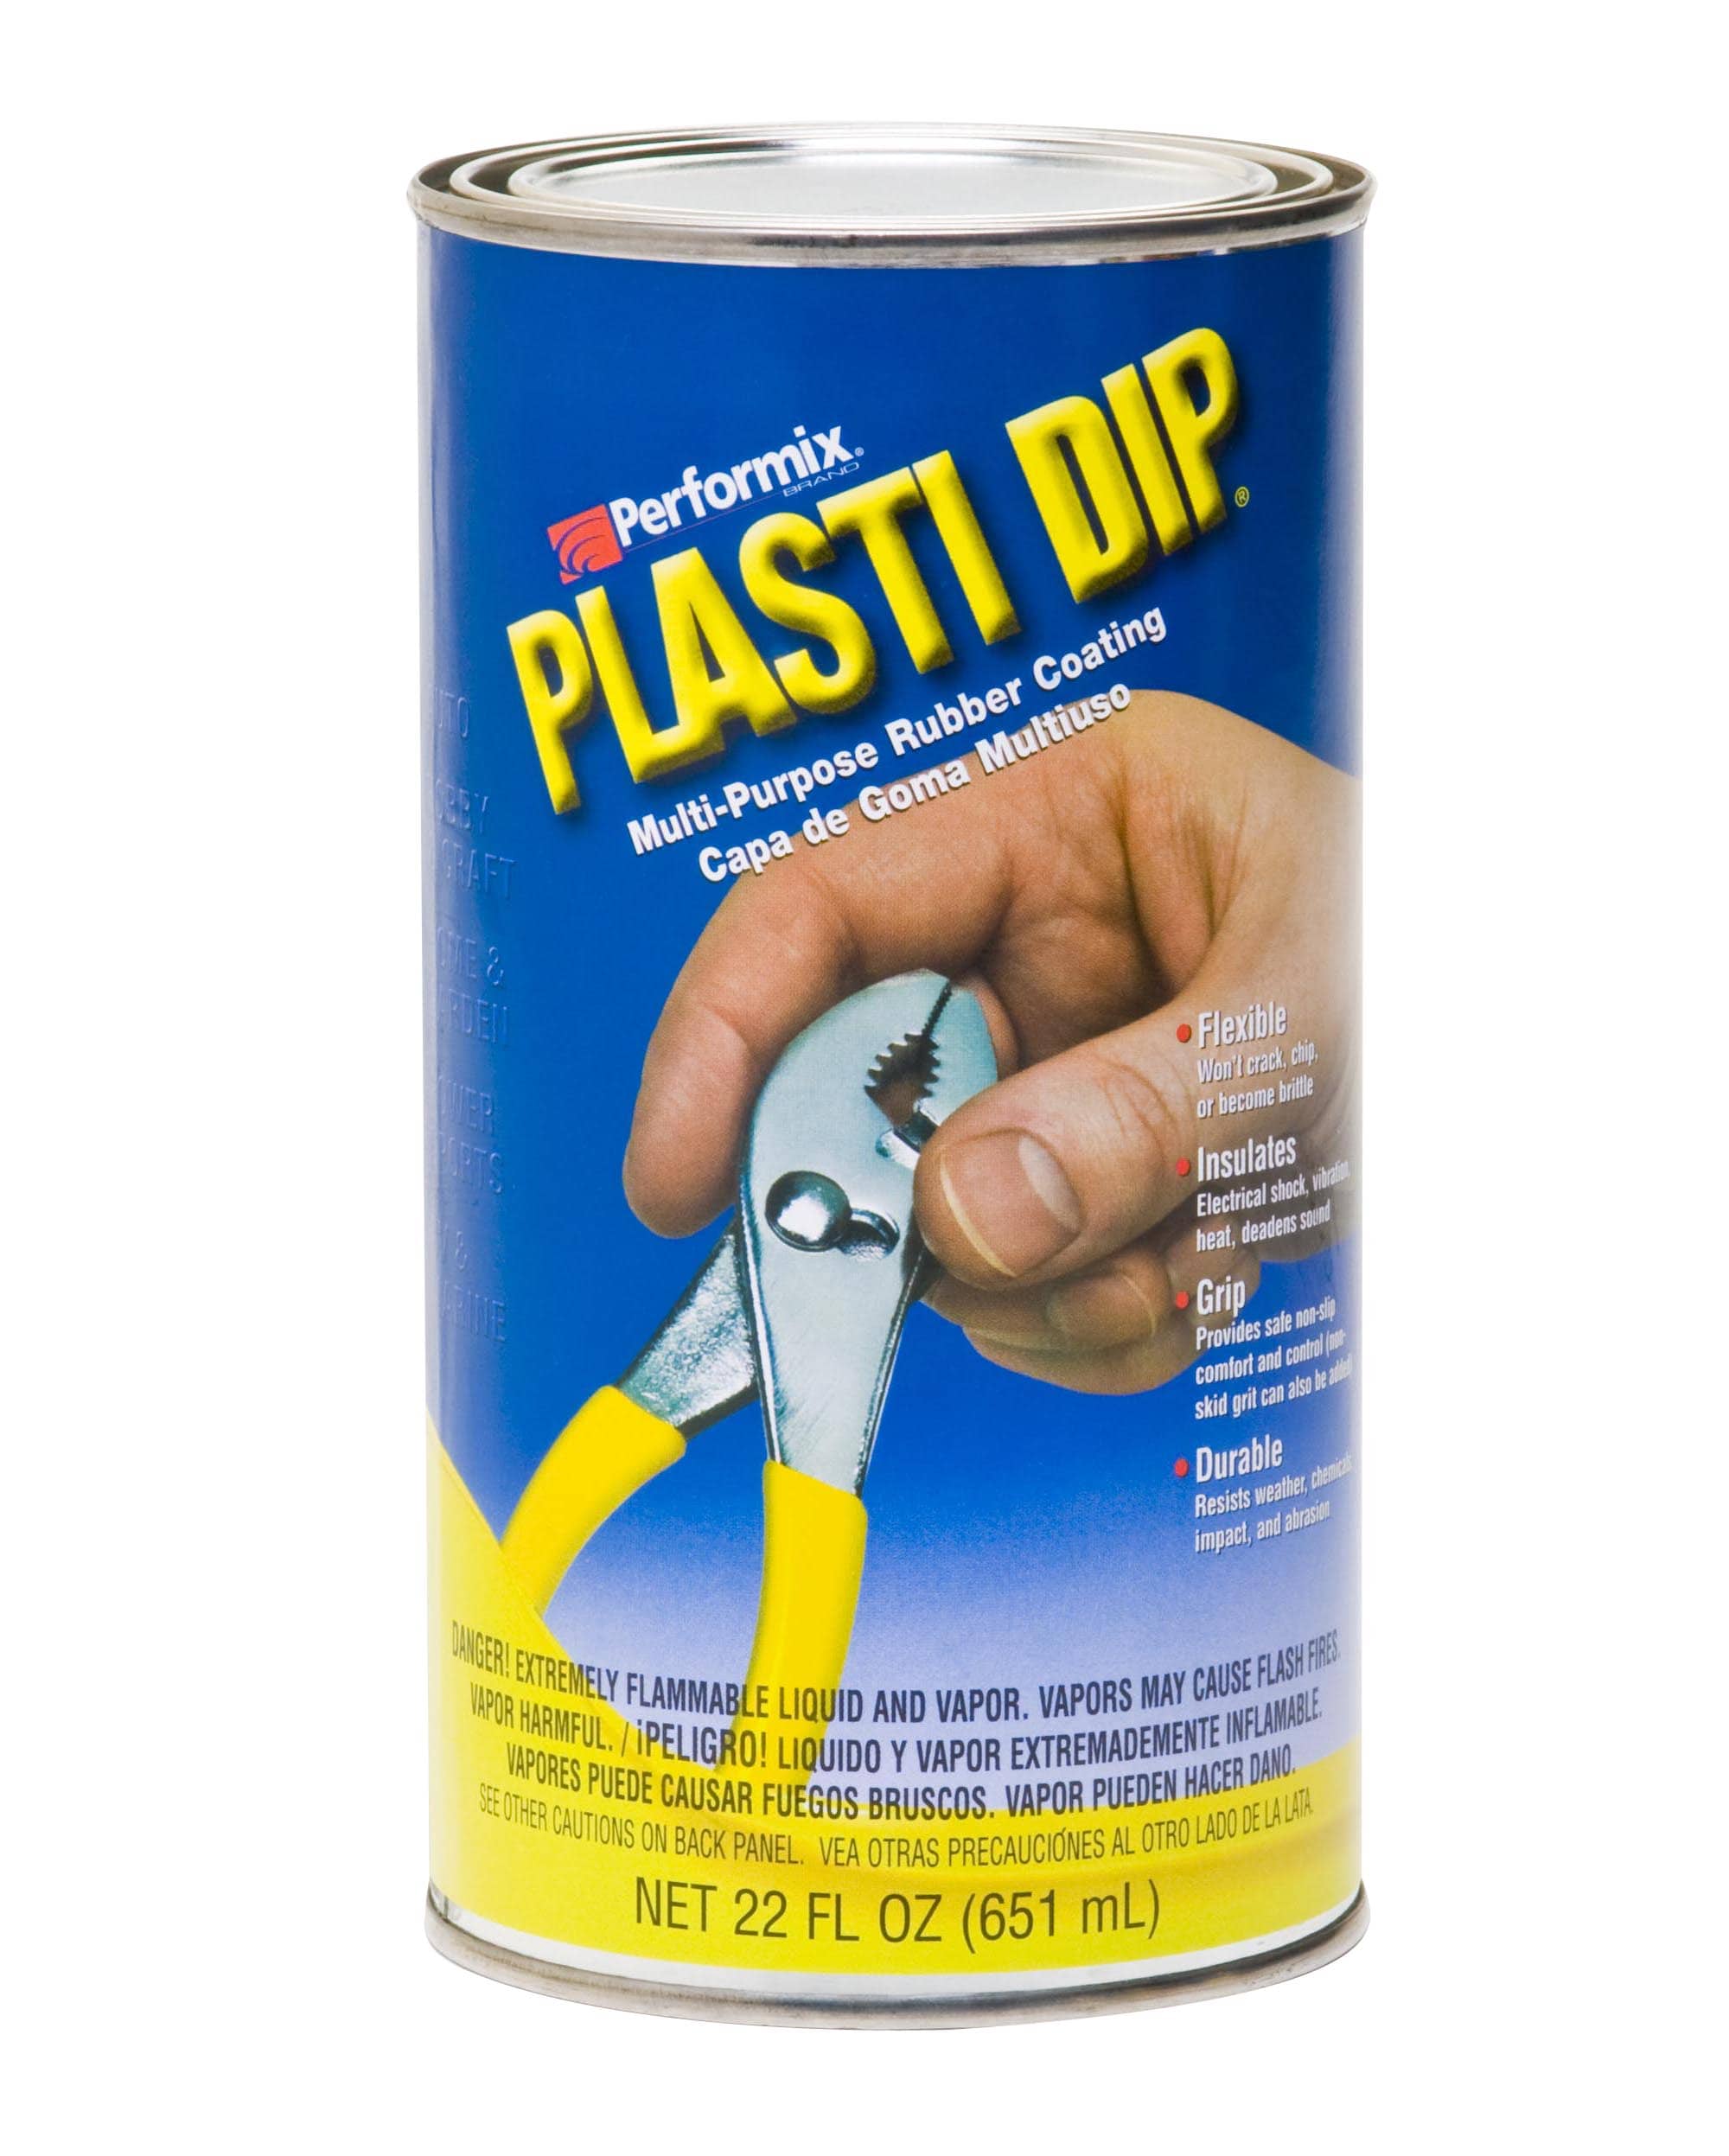 Plasti Dip® Craft Rubber Coating